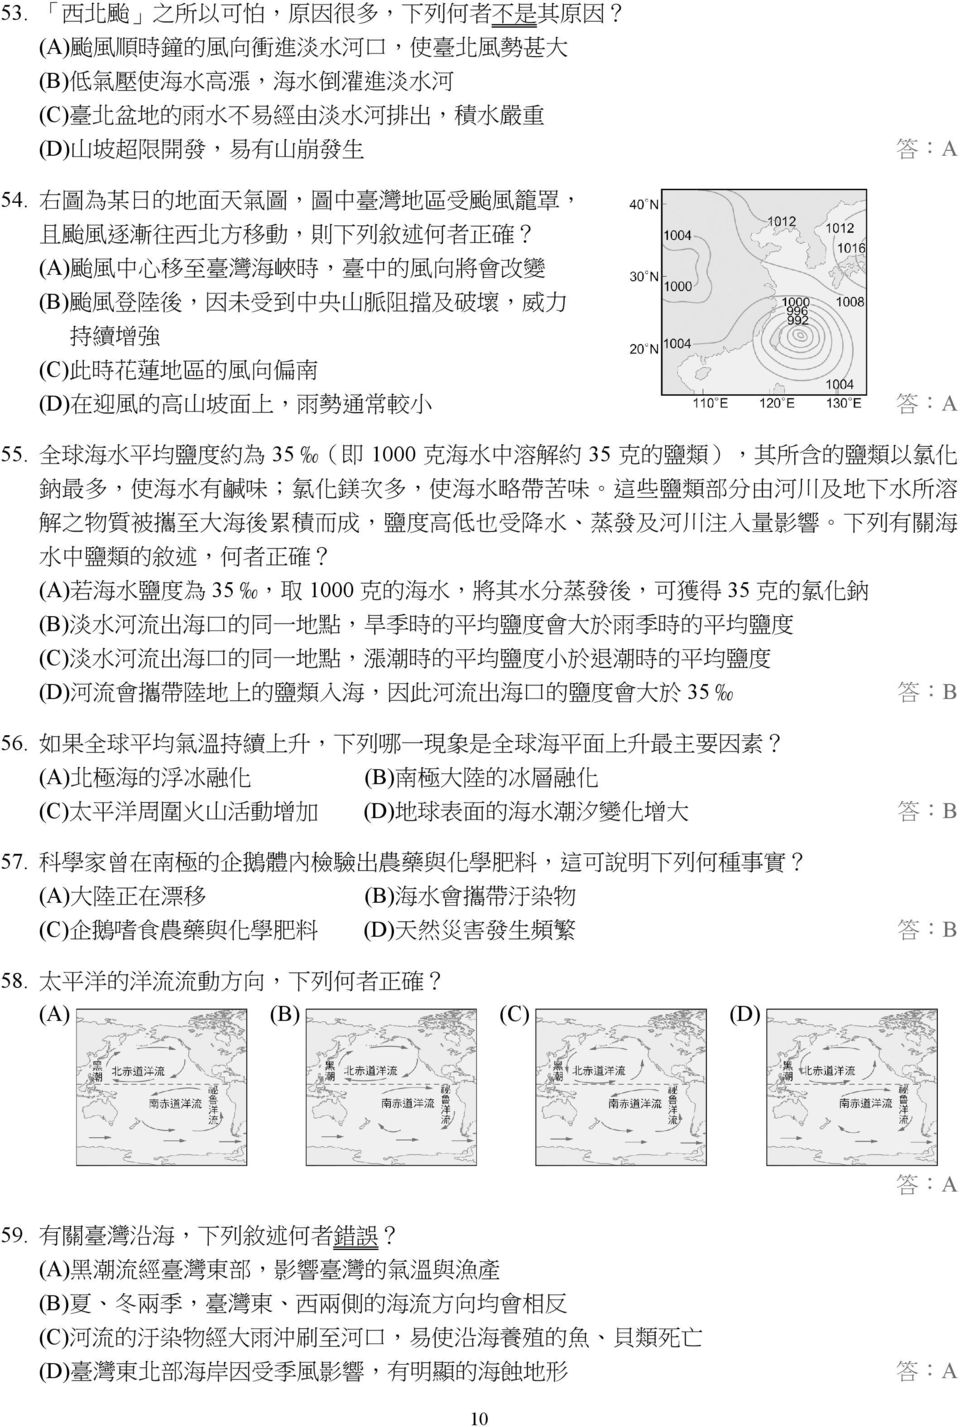 右 圖 為 某 日 的 地 面 天 氣 圖, 圖 中 臺 灣 地 區 受 颱 風 籠 罩, 且 颱 風 逐 漸 往 西 北 方 移 動, 則 下 列 敘 述 何 者 正 確?